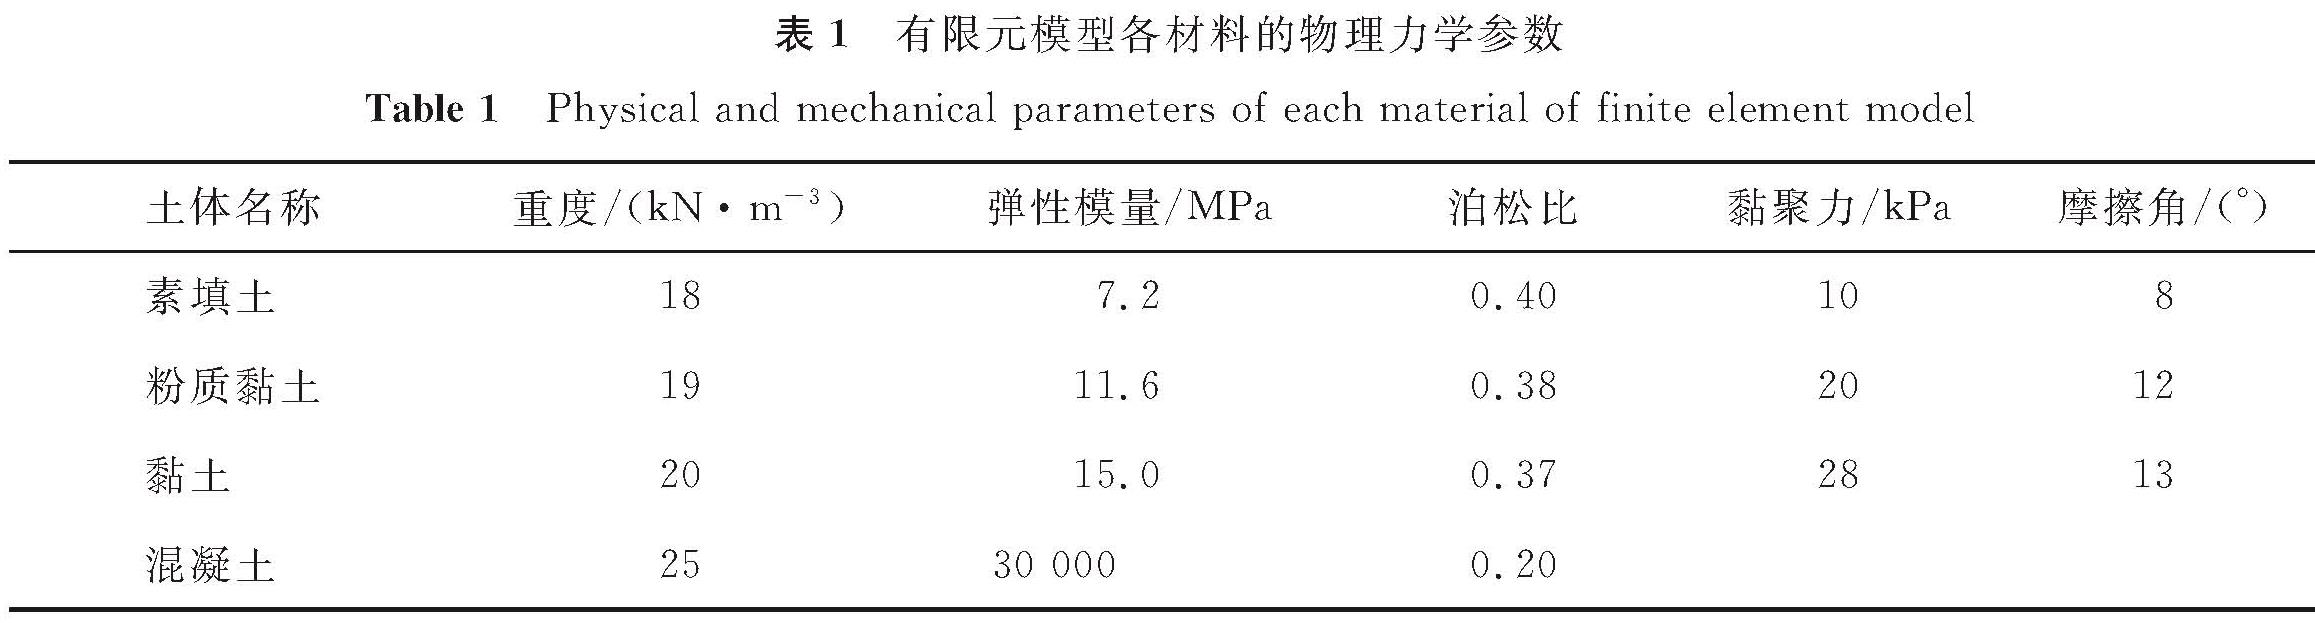 表1 有限元模型各材料的物理力学参数<br/>Table 1 Physical and mechanical parameters of each material of finite element model